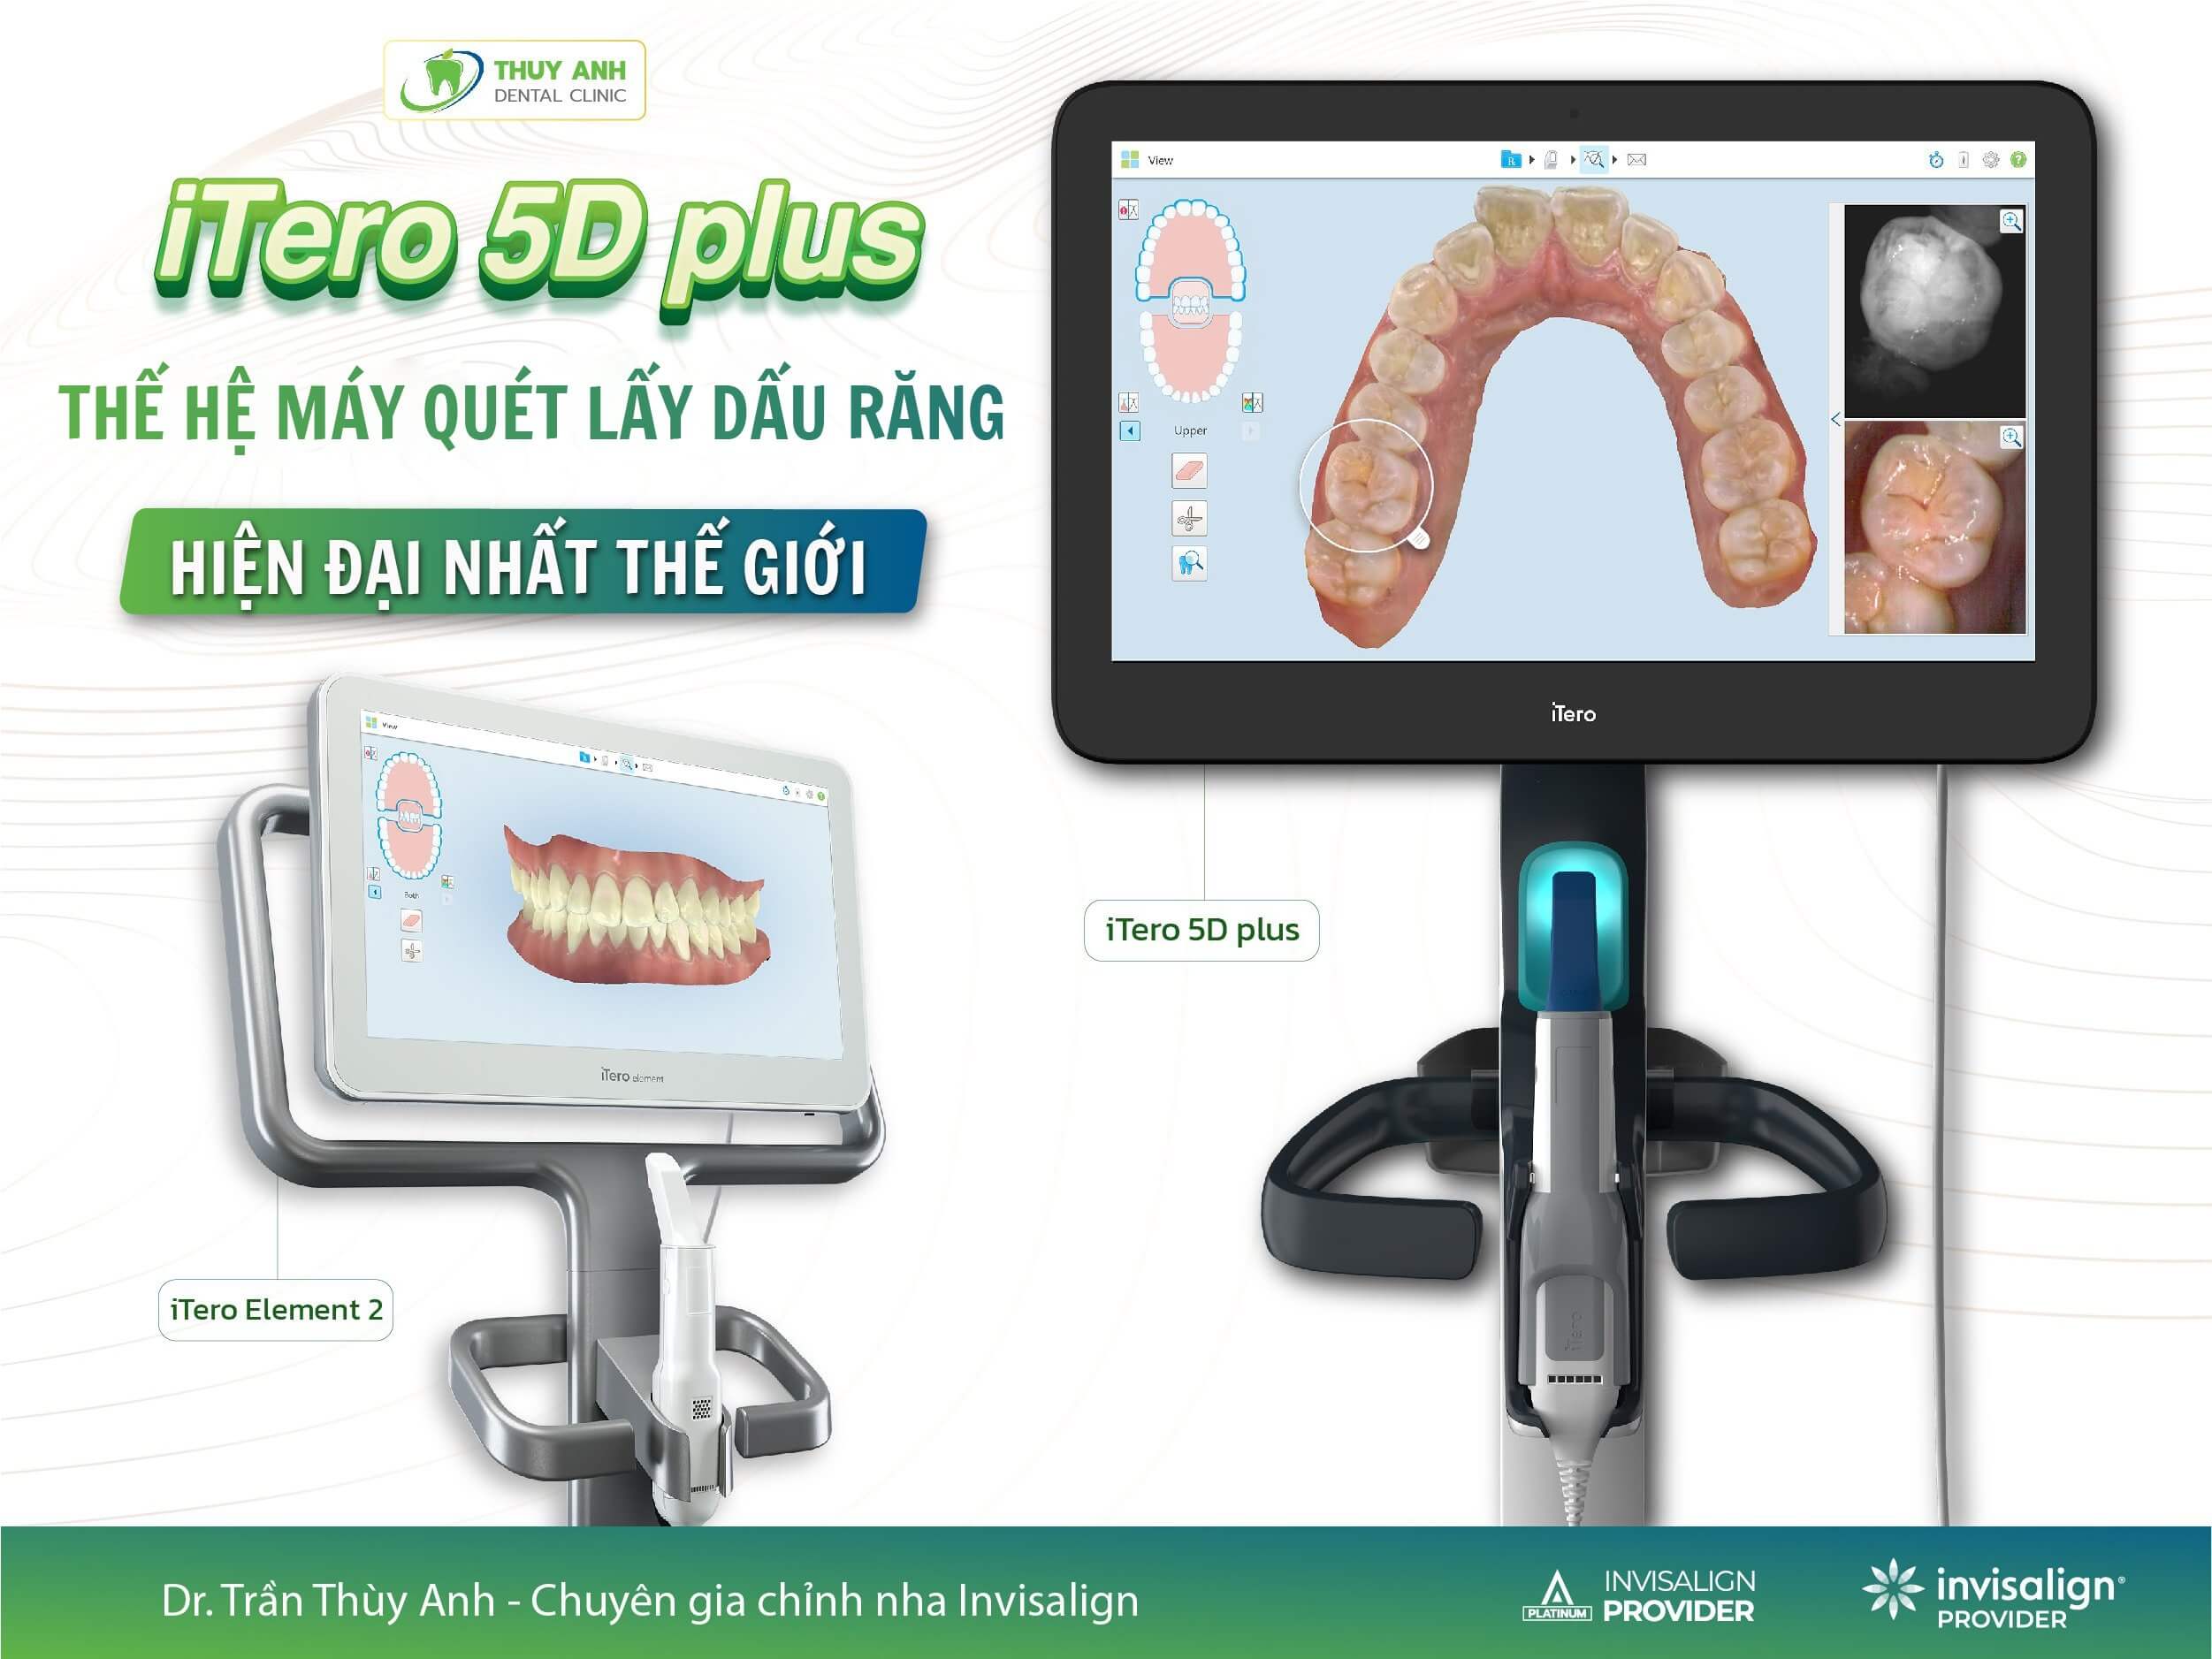 iTero 5D Plus thế hệ máy quét lấy dấu răng hiện đại nhất thế giới